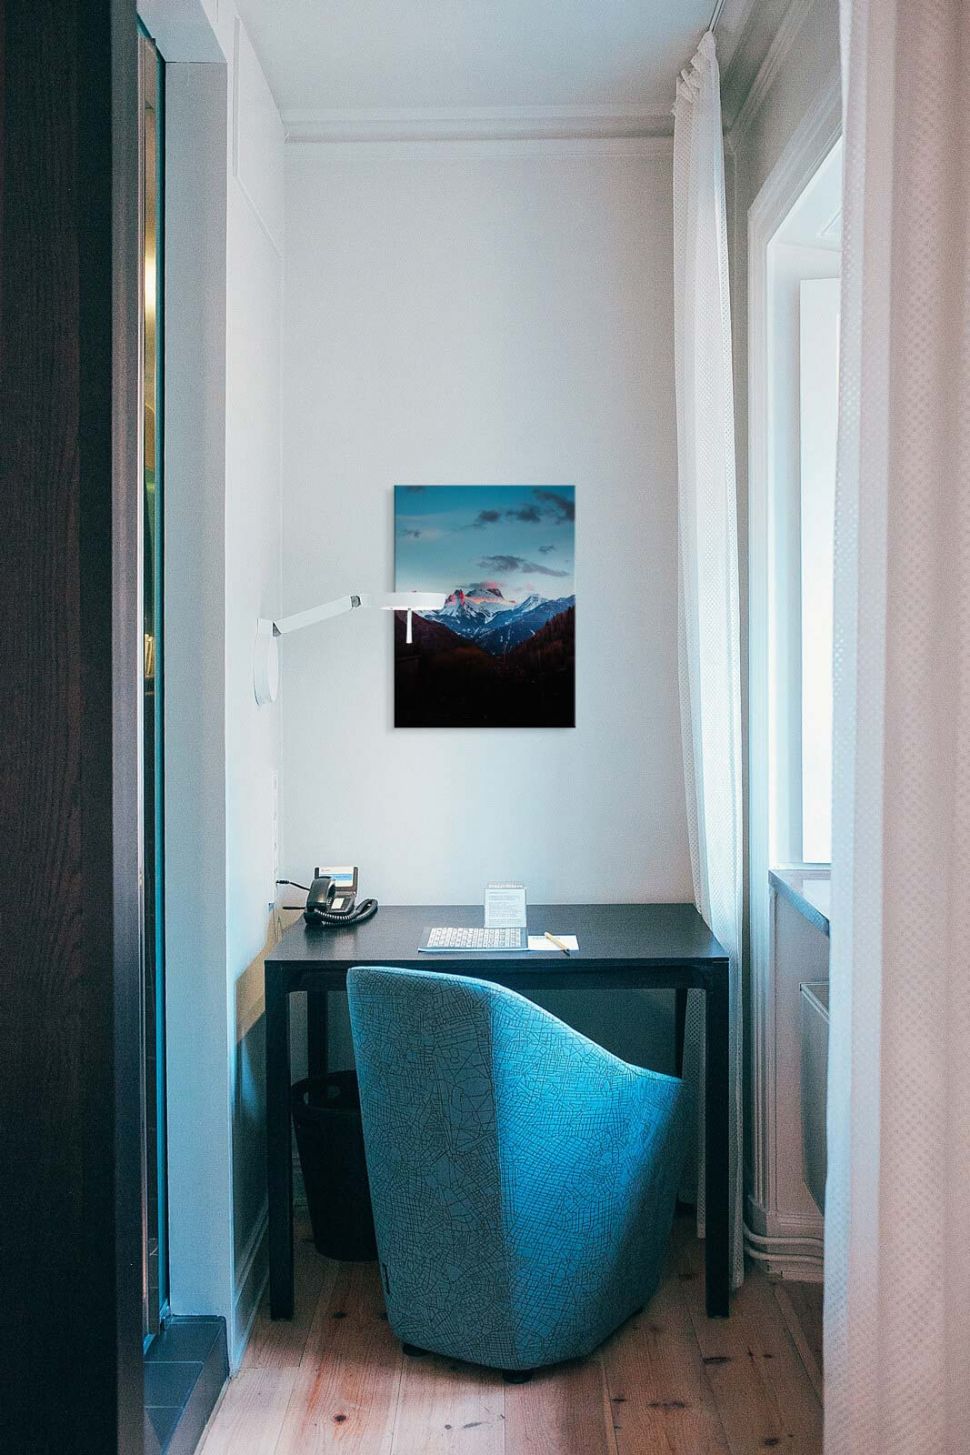 Canvas Górskie widoki powieszony nad czarnym biurkiem